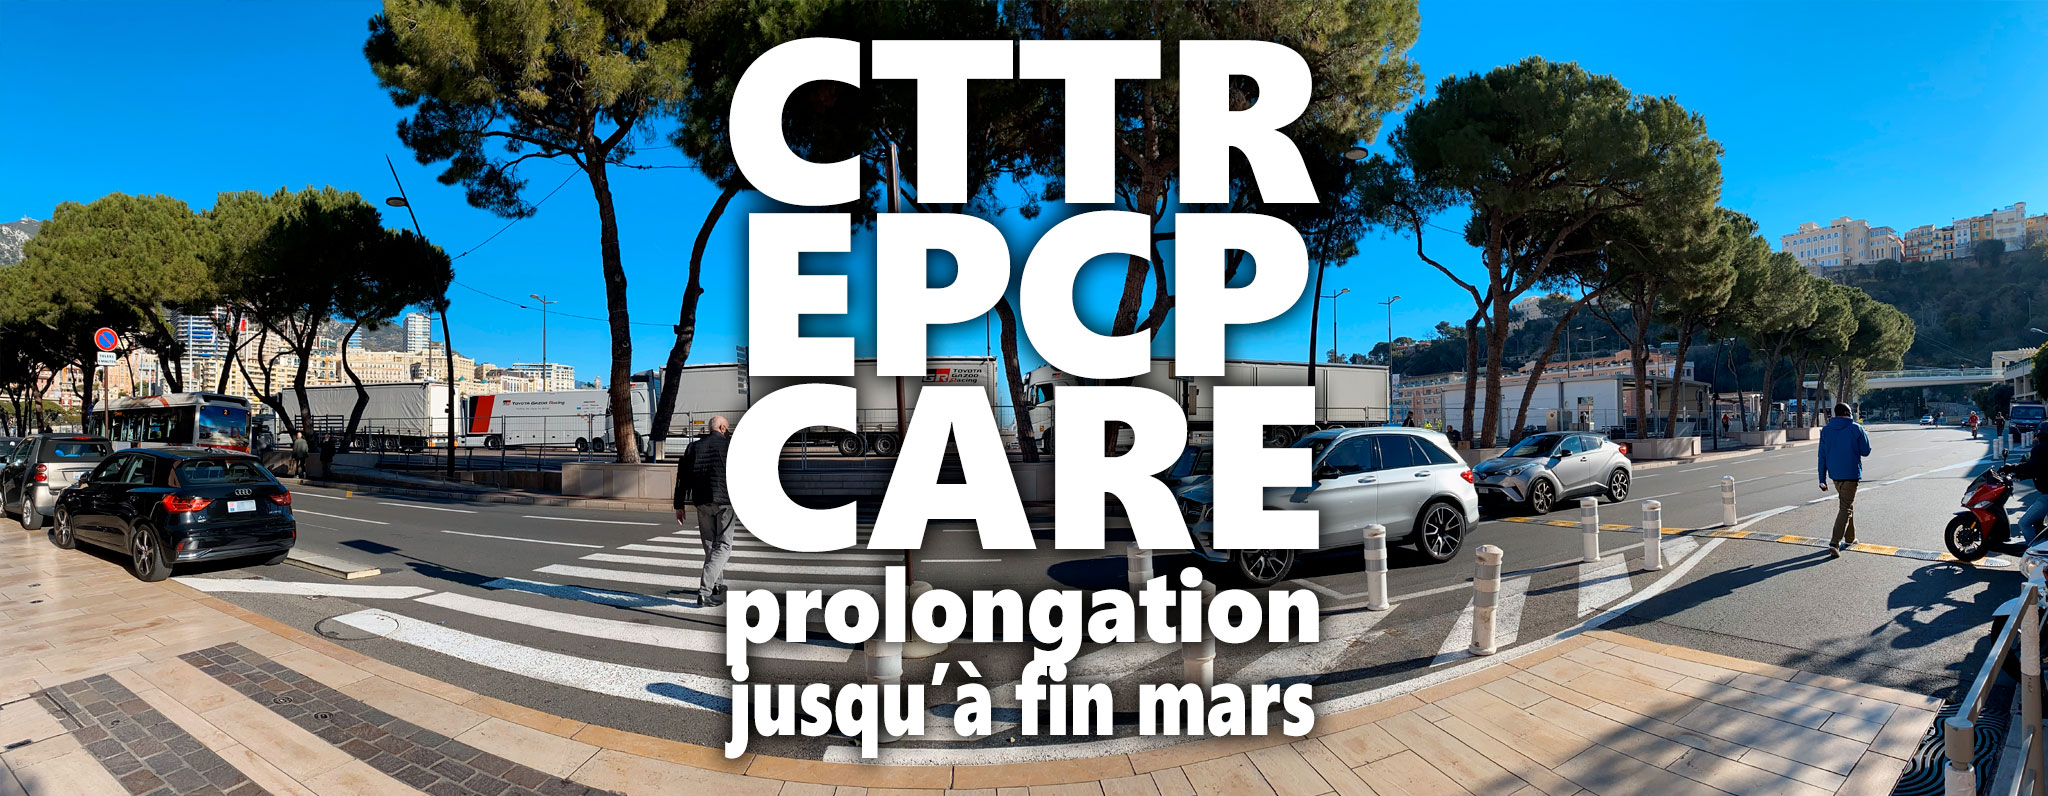 CTTR, EPCP et CARE : prolongation jusqu'à fin mars